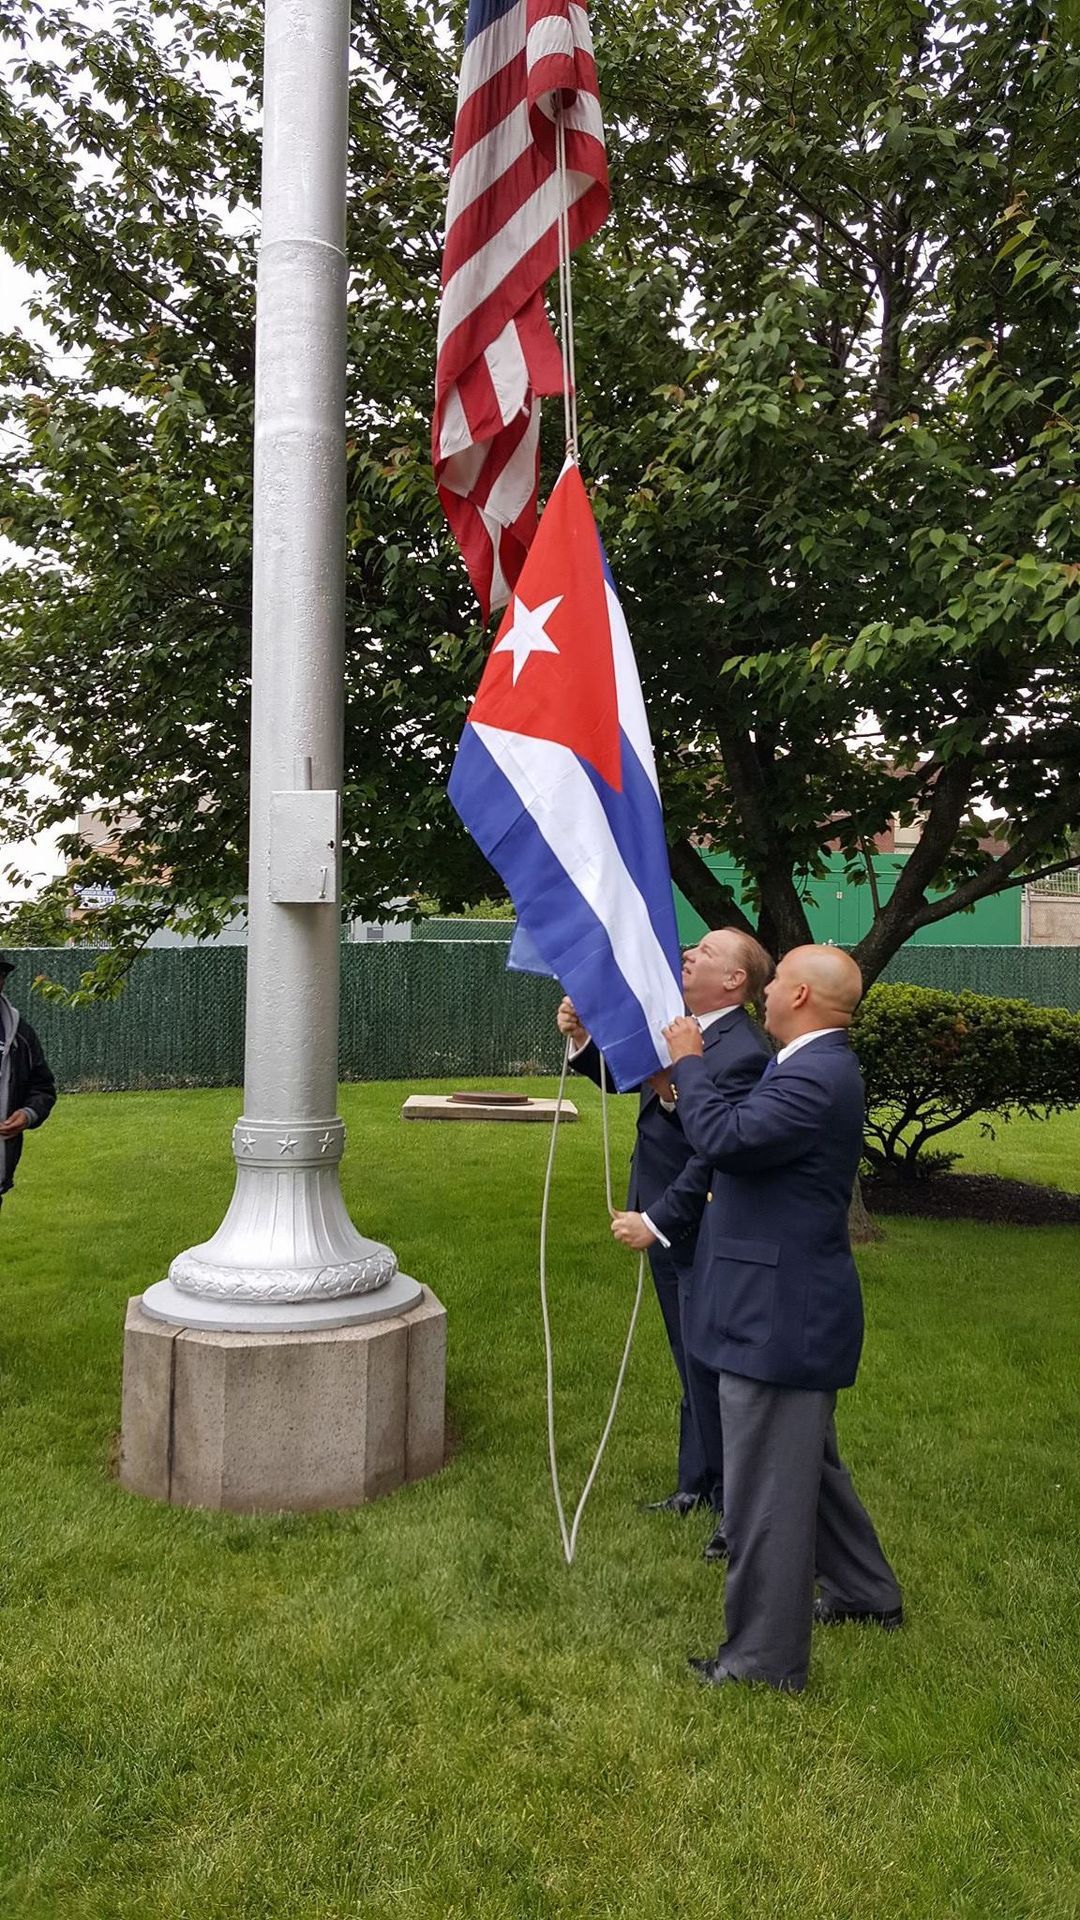 Cuban Flag Raising